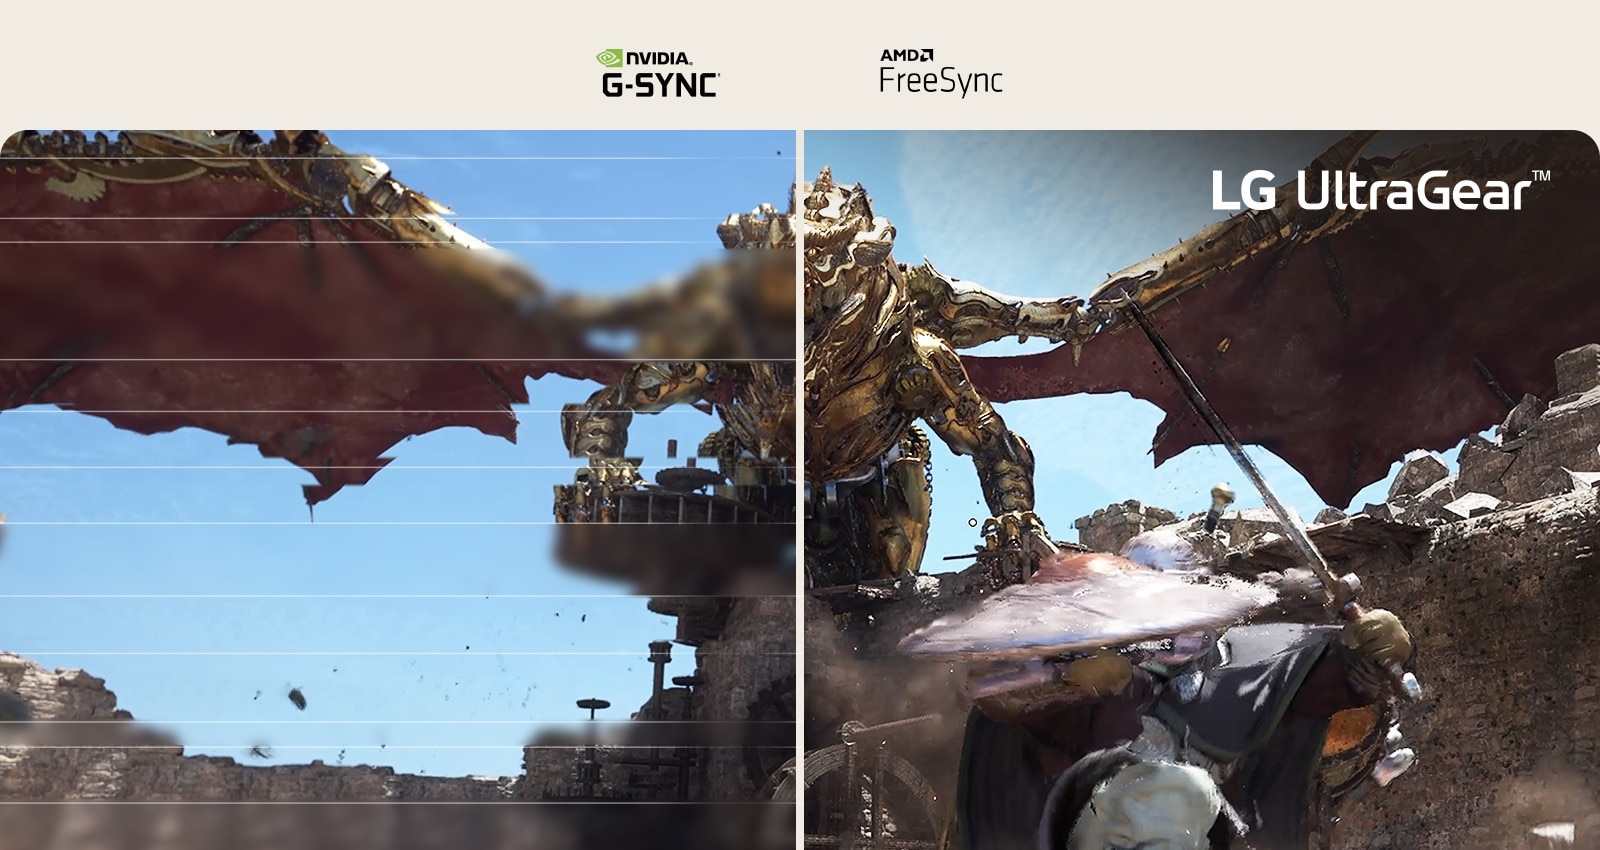 Usporedba besprijekorne slike videoigre - lijeva slika s prekidima, desna slika bez prekida.